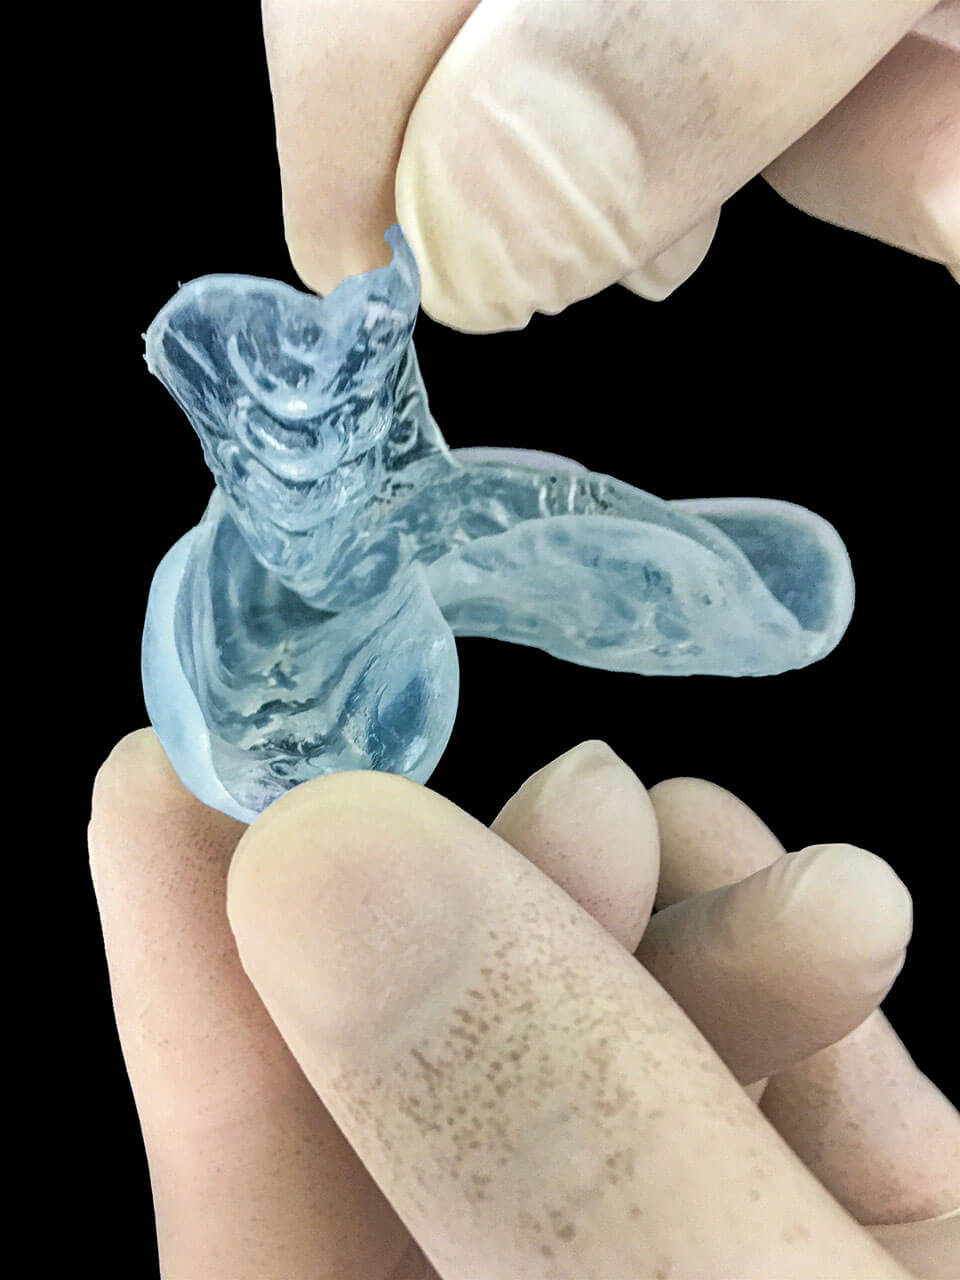 Abb. 7 Nicht korrekt angefertigter Zahnschutz: Die im Multilayer-Verfahren nacheinander tiefgezogenen Folien lösen sich bei körperlicher Belastung voneinander.